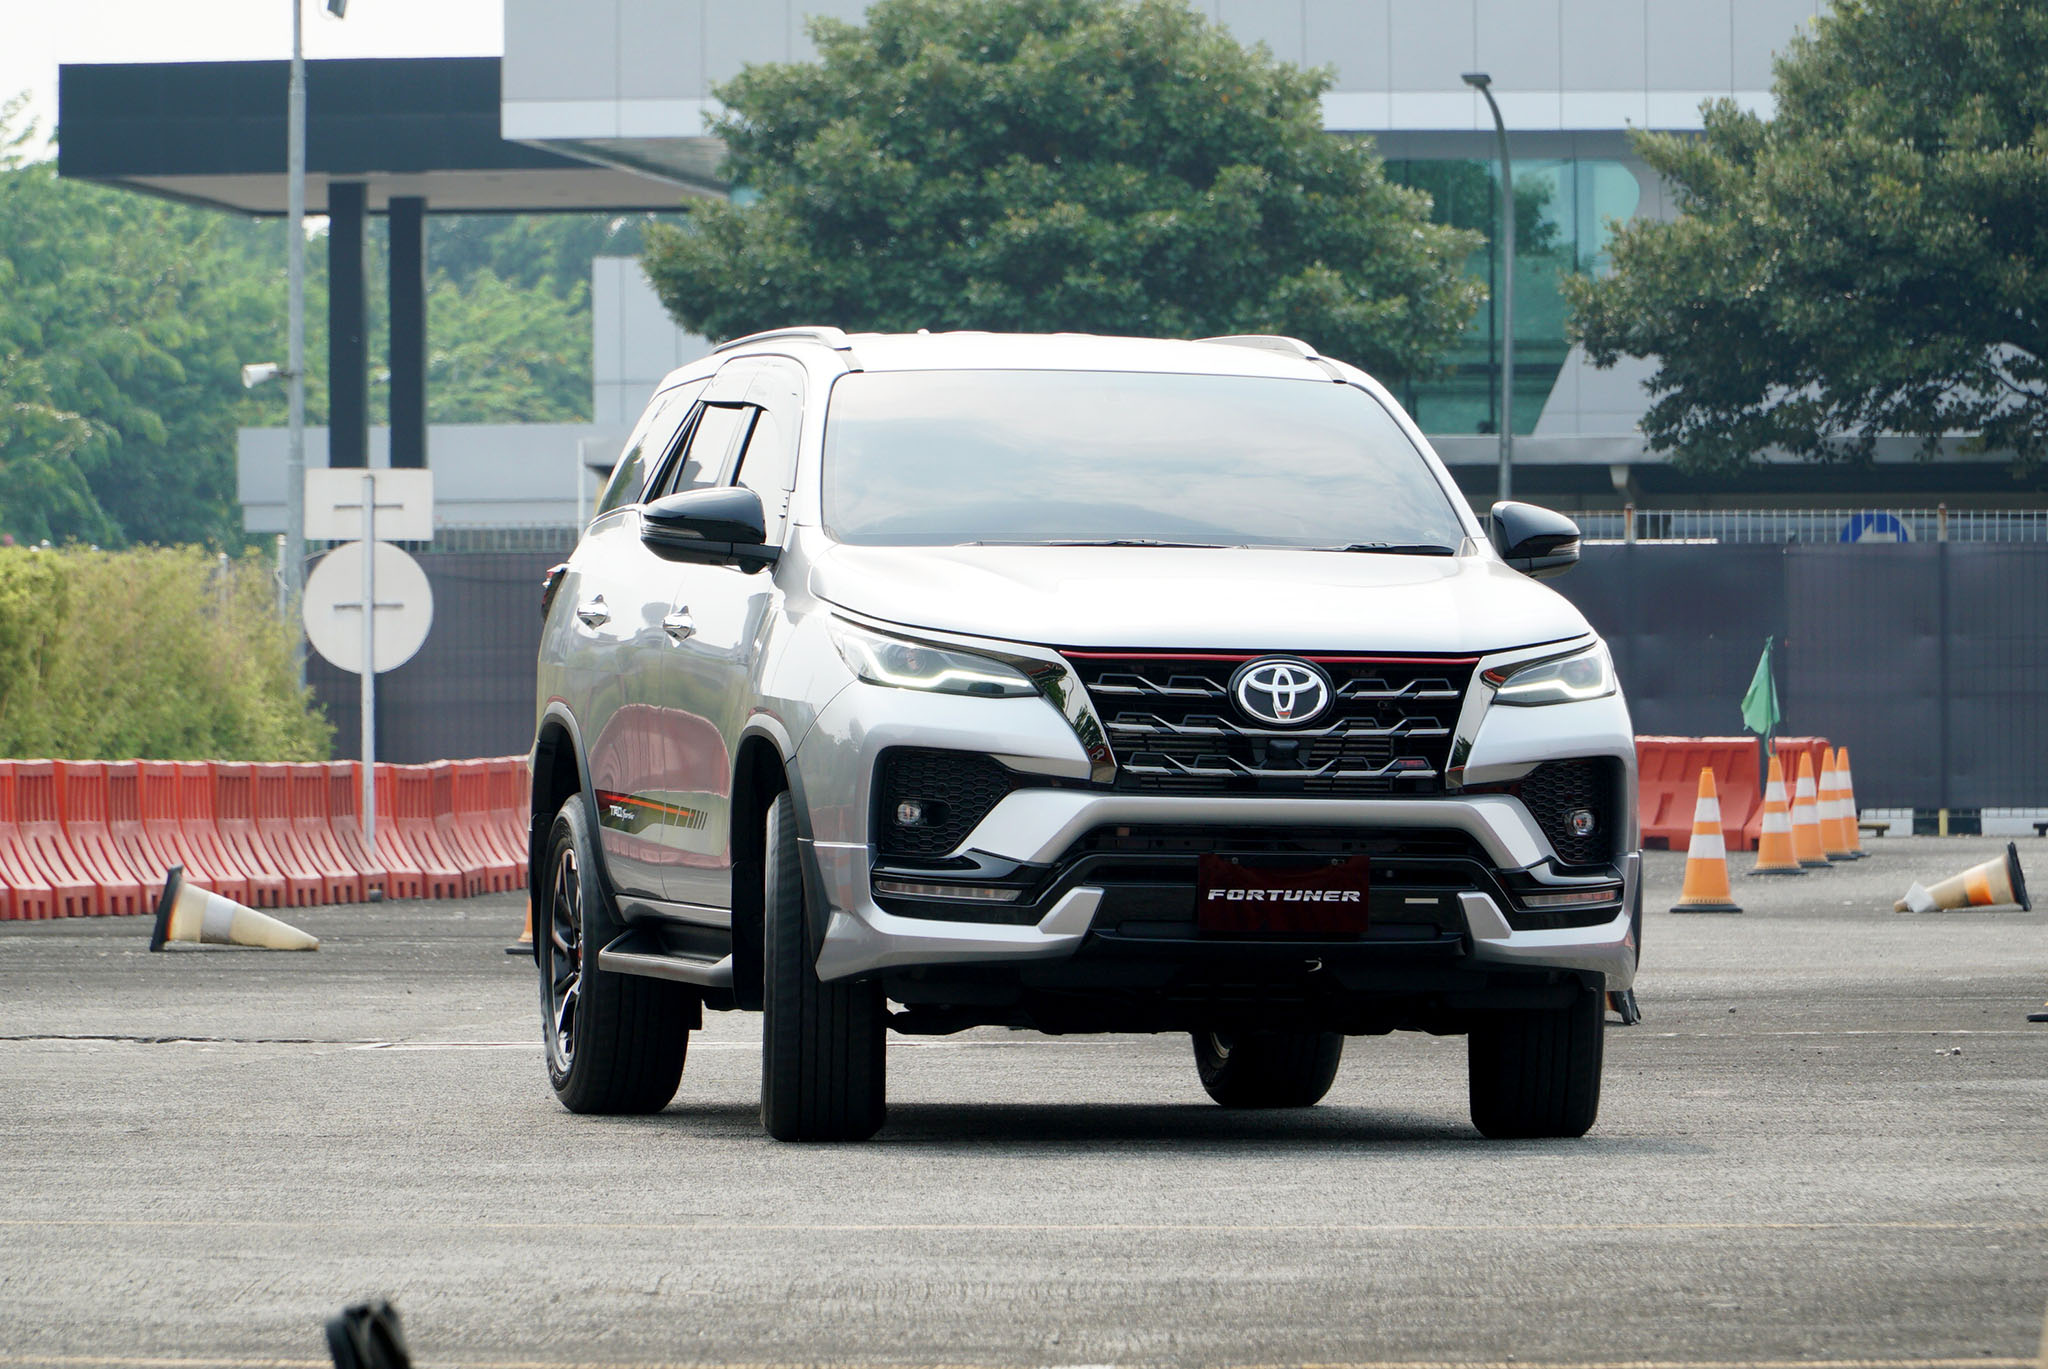 Toyota Indonesia Bersiap Luncurkan Fortuner Bermesin Lebih Besar 